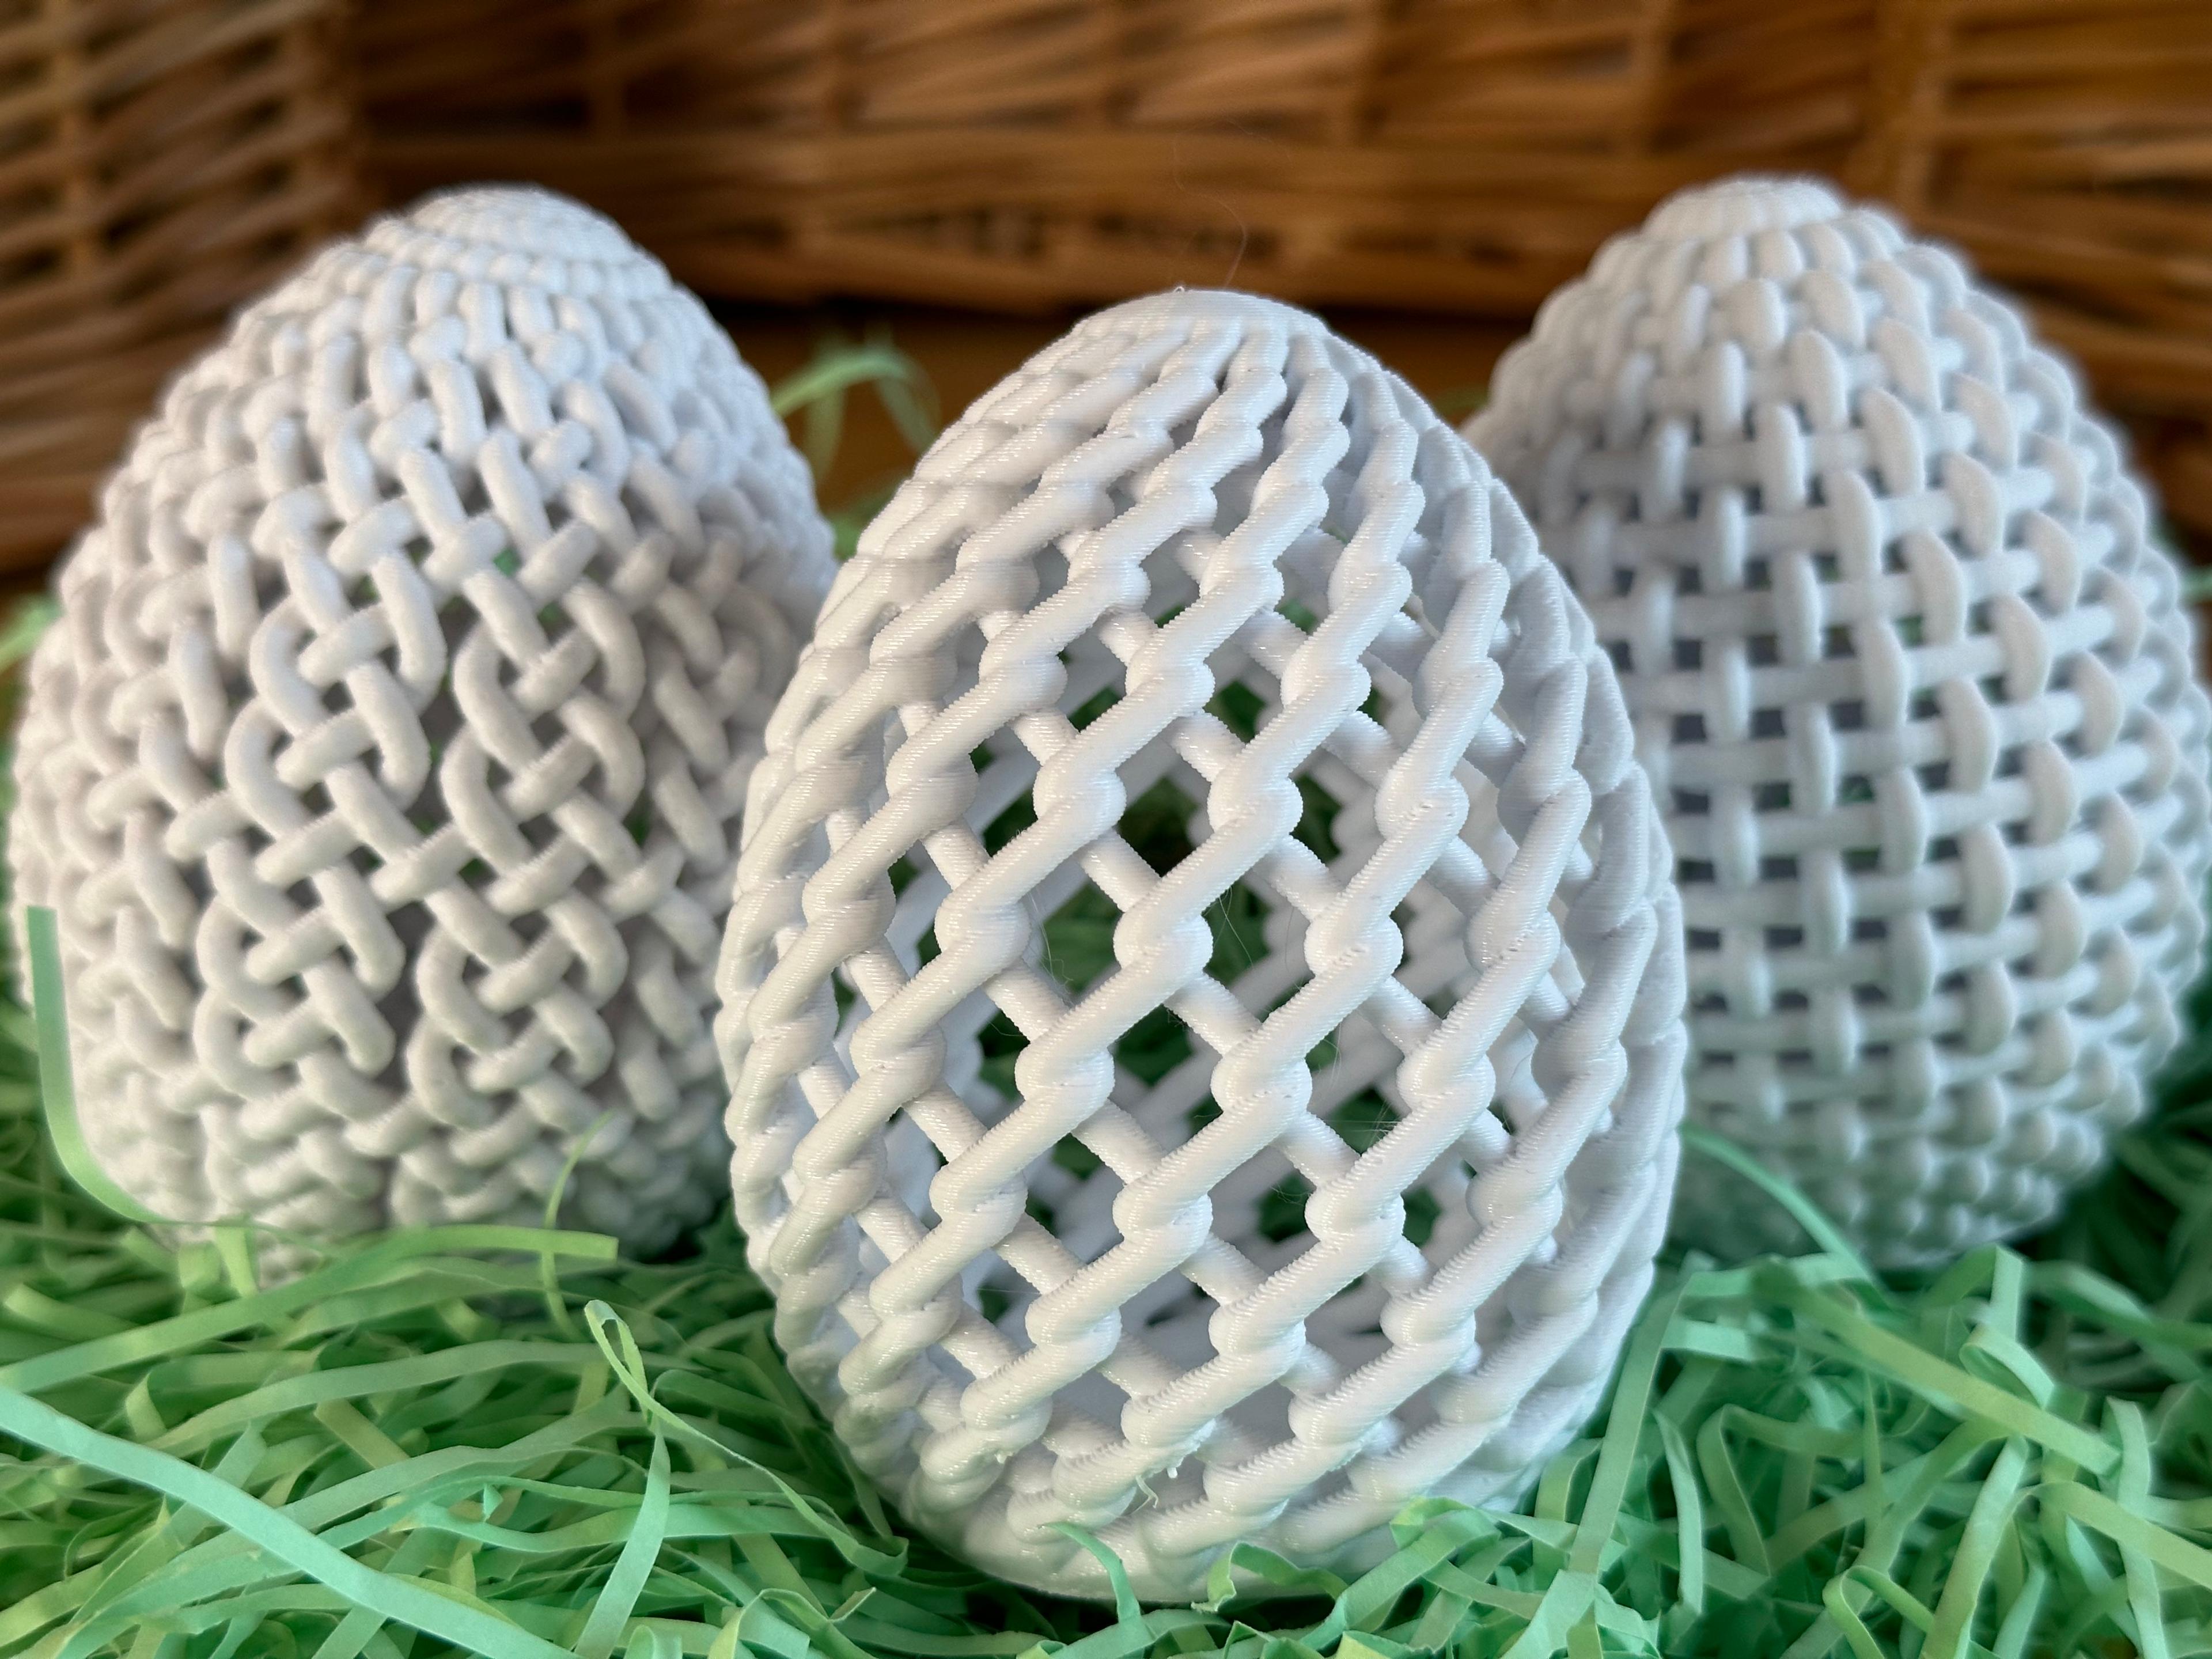 Lattice Easter Egg (Celtic Knot) 3d model